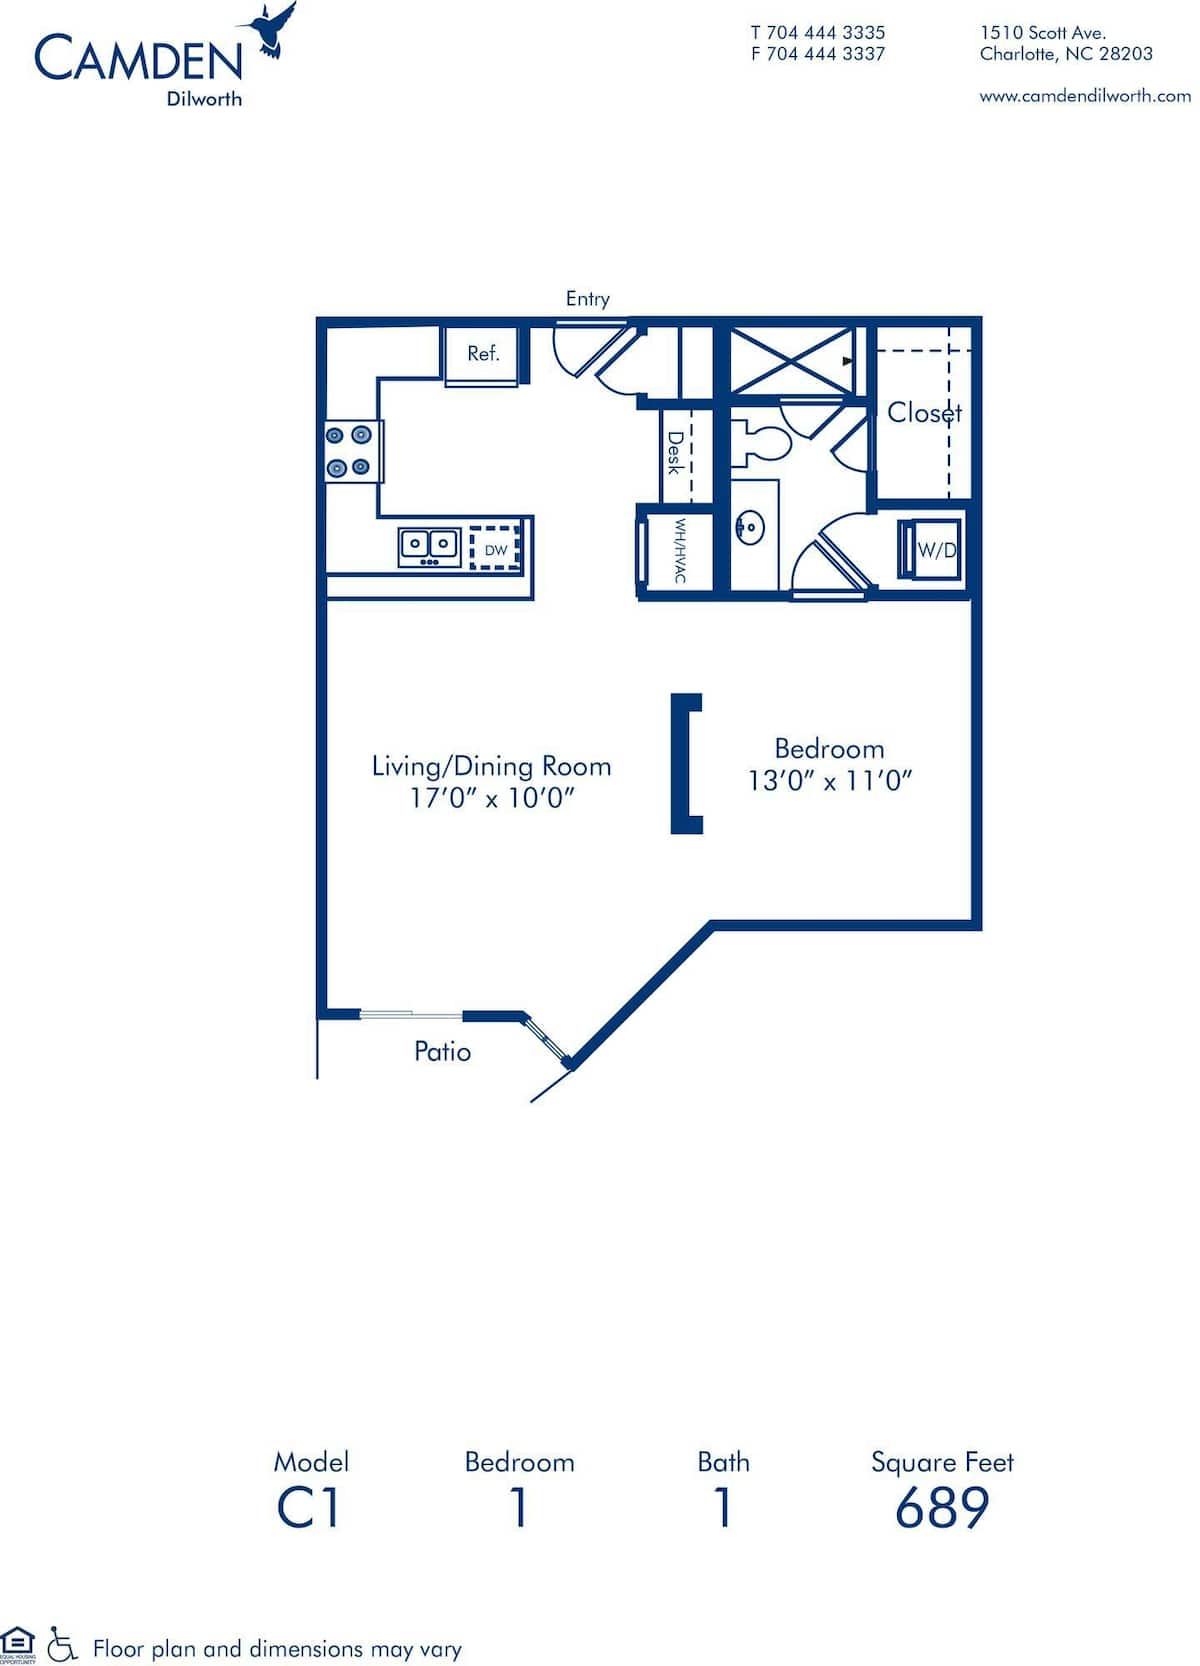 Floorplan diagram for C1, showing 1 bedroom